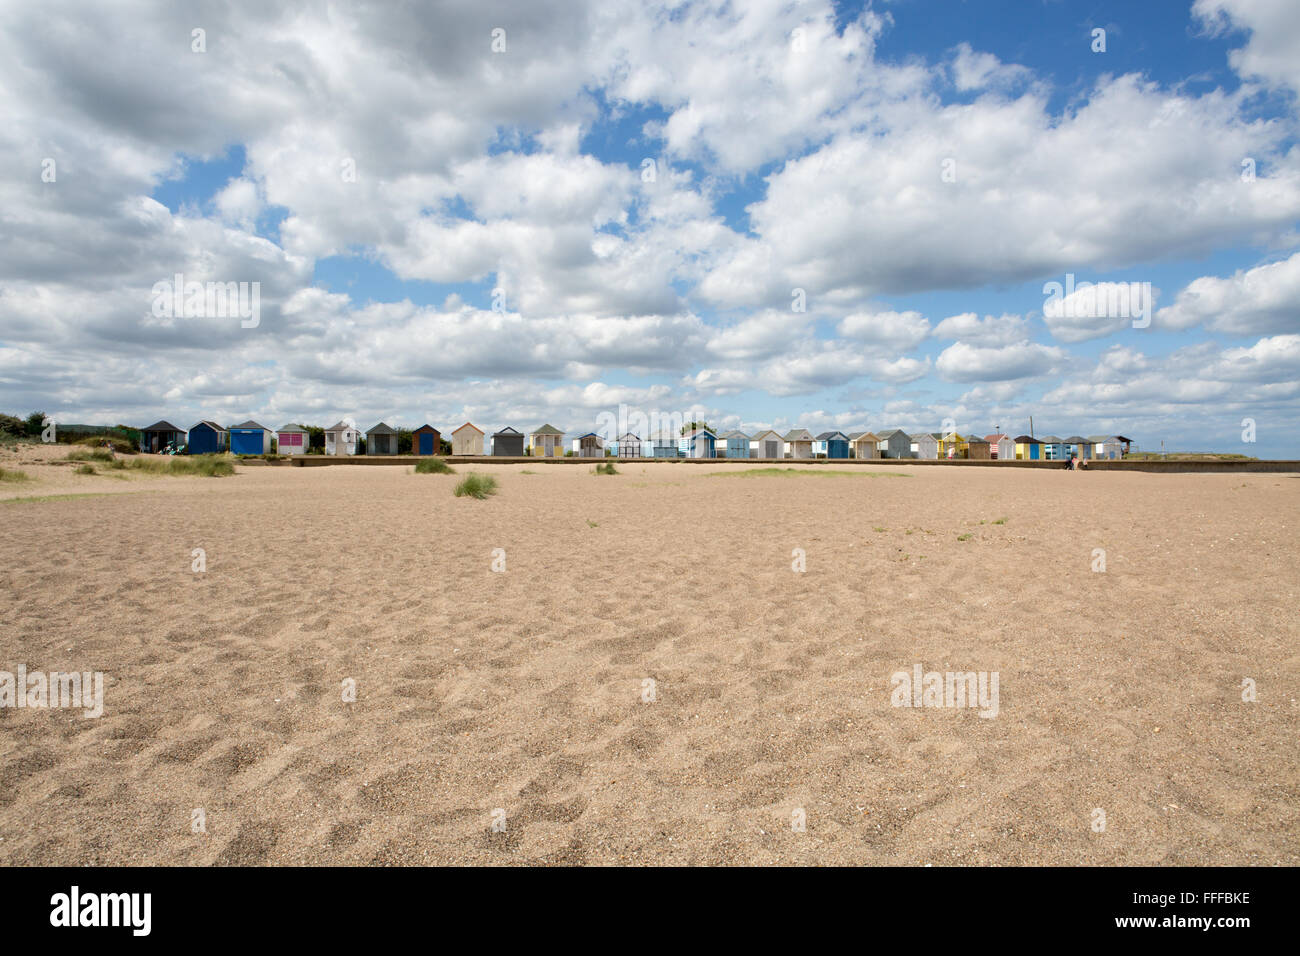 Zeile des traditionellen Englischen Strandhütten mit vielen Wolken und Sand, Nordsee, Sutton-on-Sea, Lincolnshire, England, Großbritannien Stockfoto